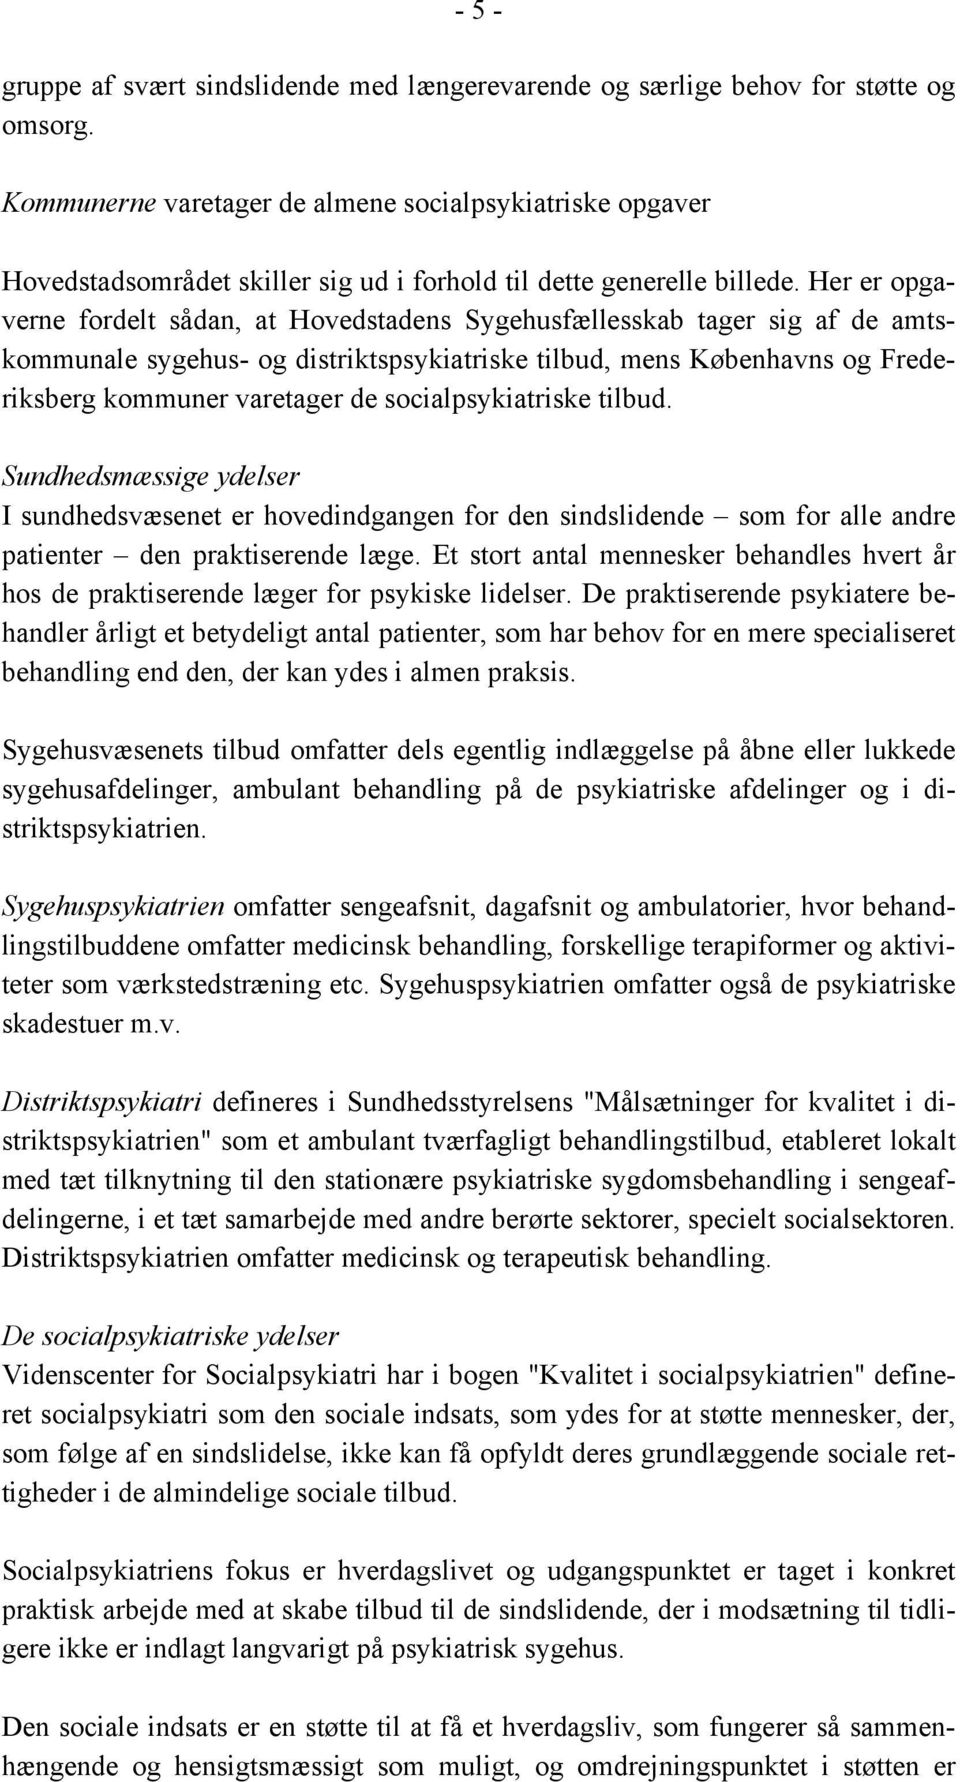 Her er opgaverne fordelt sådan, at Hovedstadens Sygehusfællesskab tager sig af de amtskommunale sygehus- og distriktspsykiatriske tilbud, mens Københavns og Frederiksberg kommuner varetager de